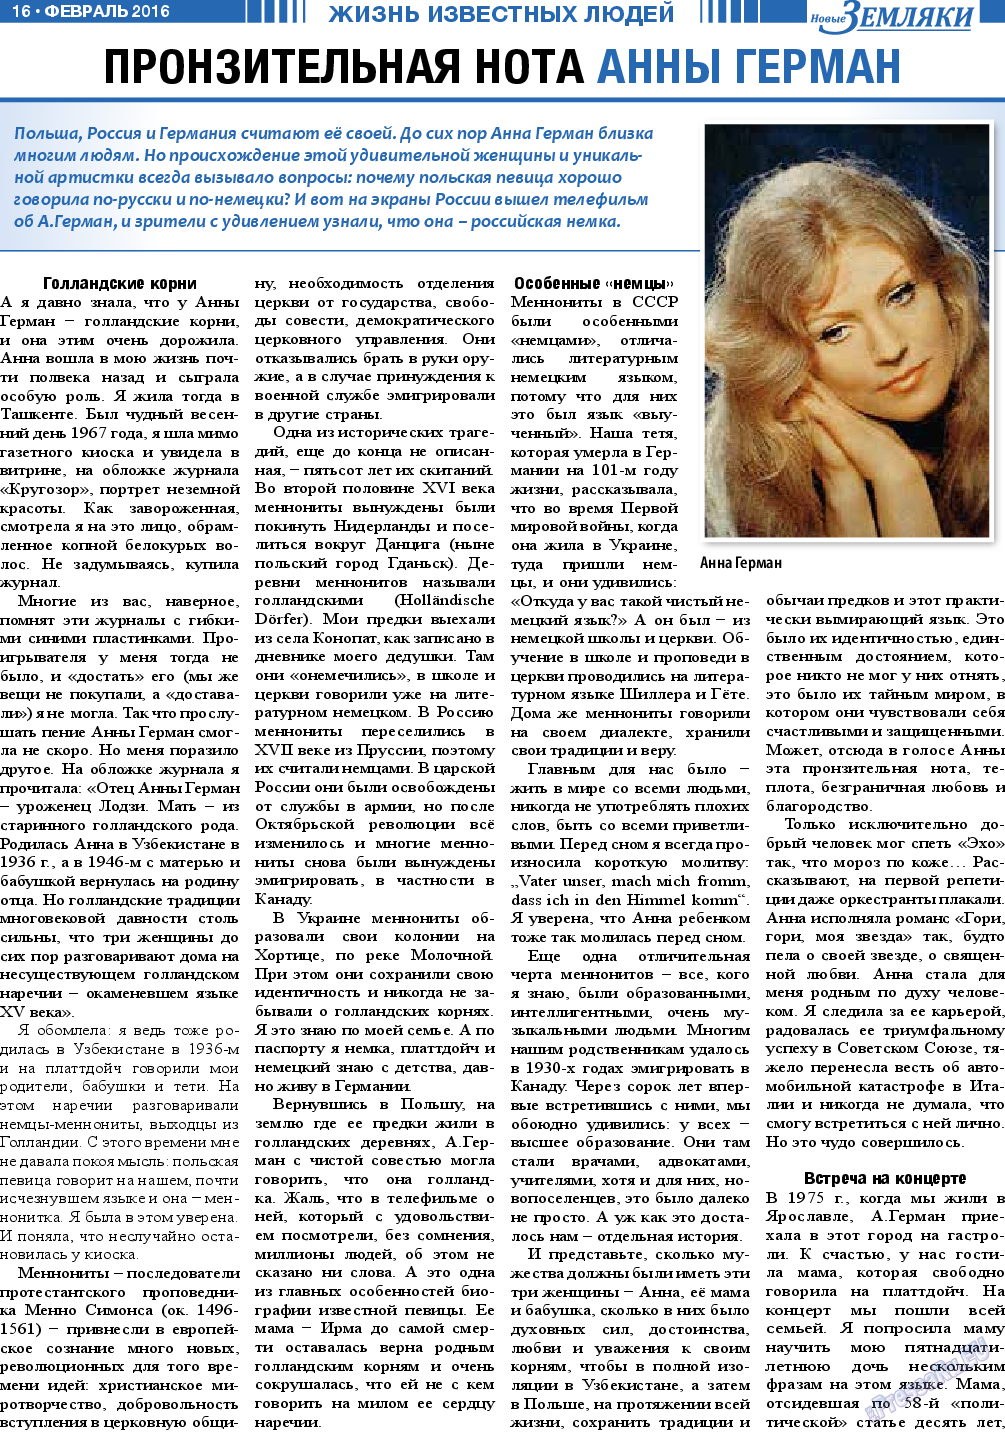 Новые Земляки (газета). 2016 год, номер 2, стр. 16